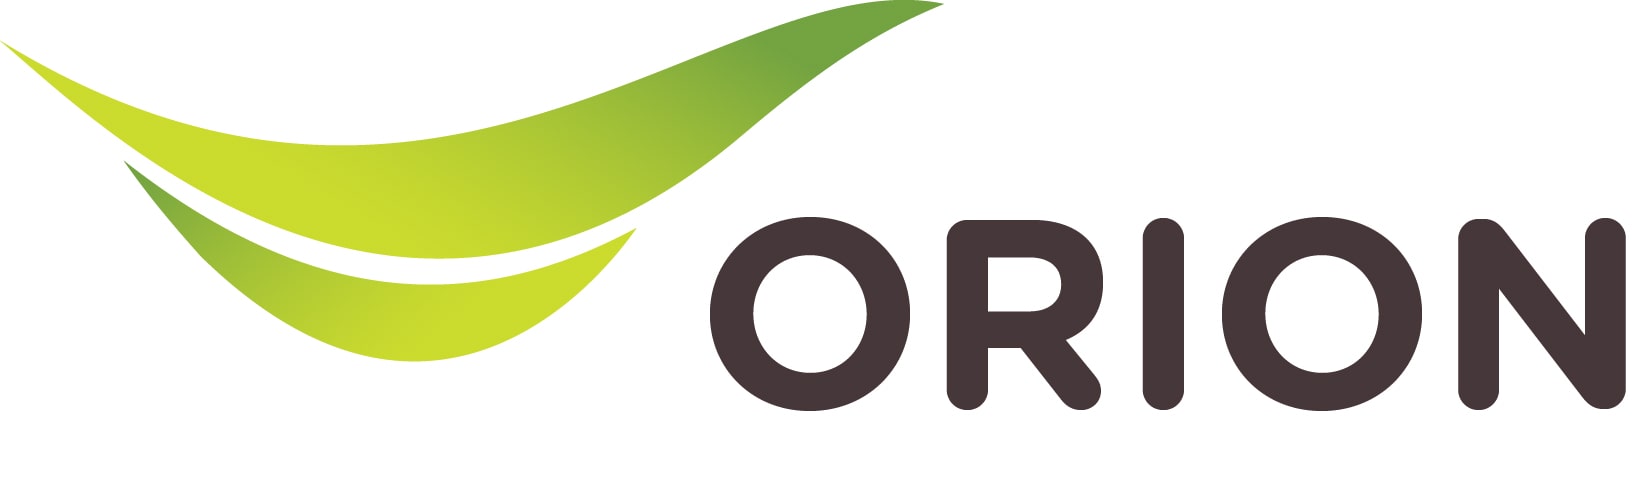 Orion-satellite-min